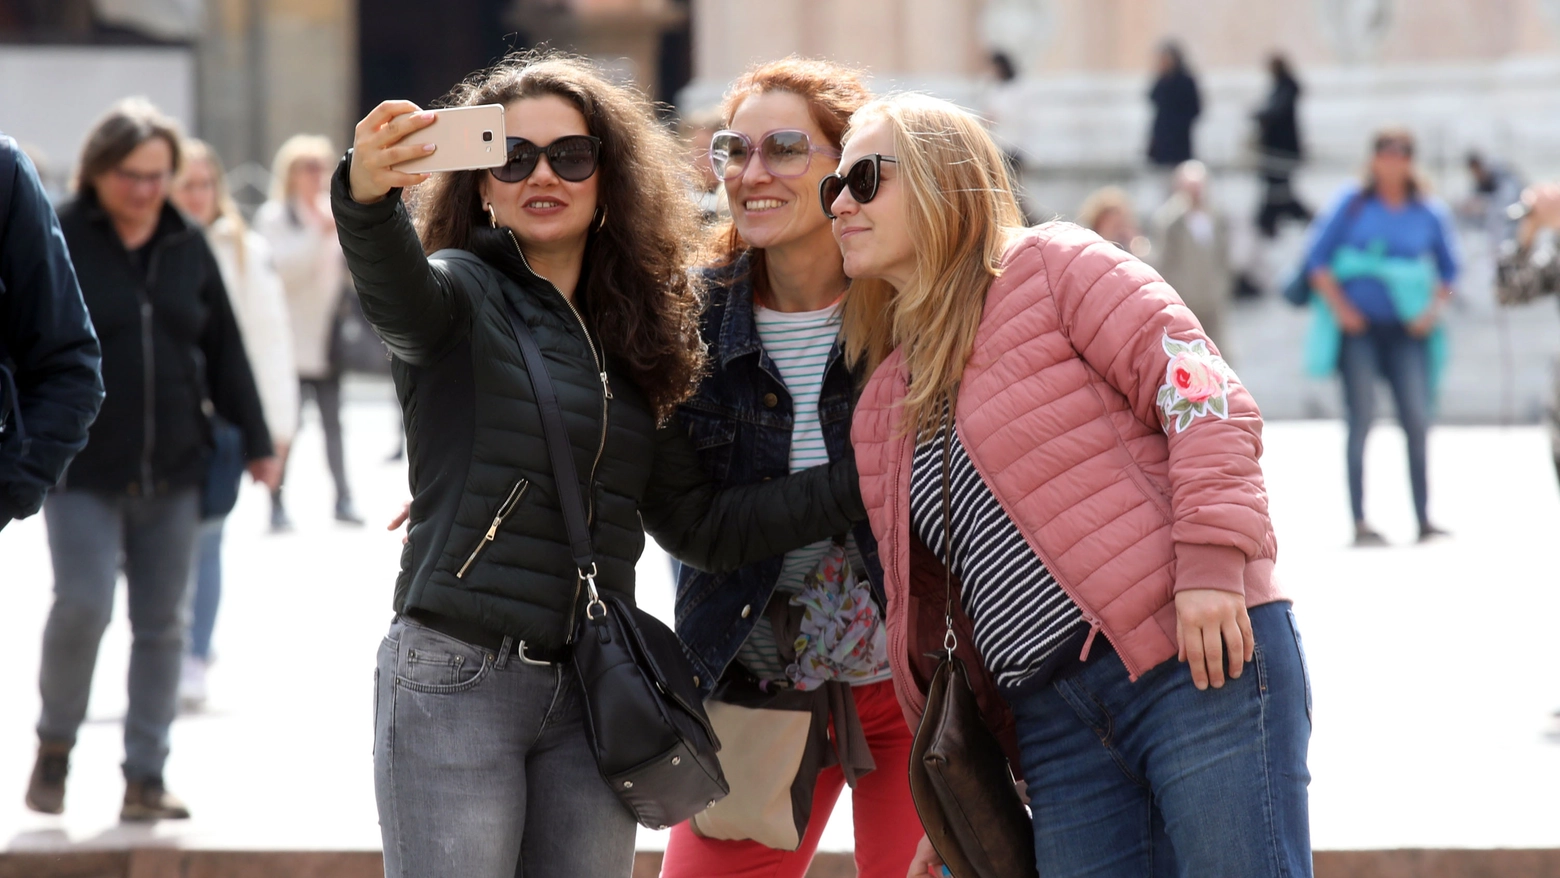 Turiste in centro a Bologna: ci si aspetta un boom di arrivi per il 25 aprile